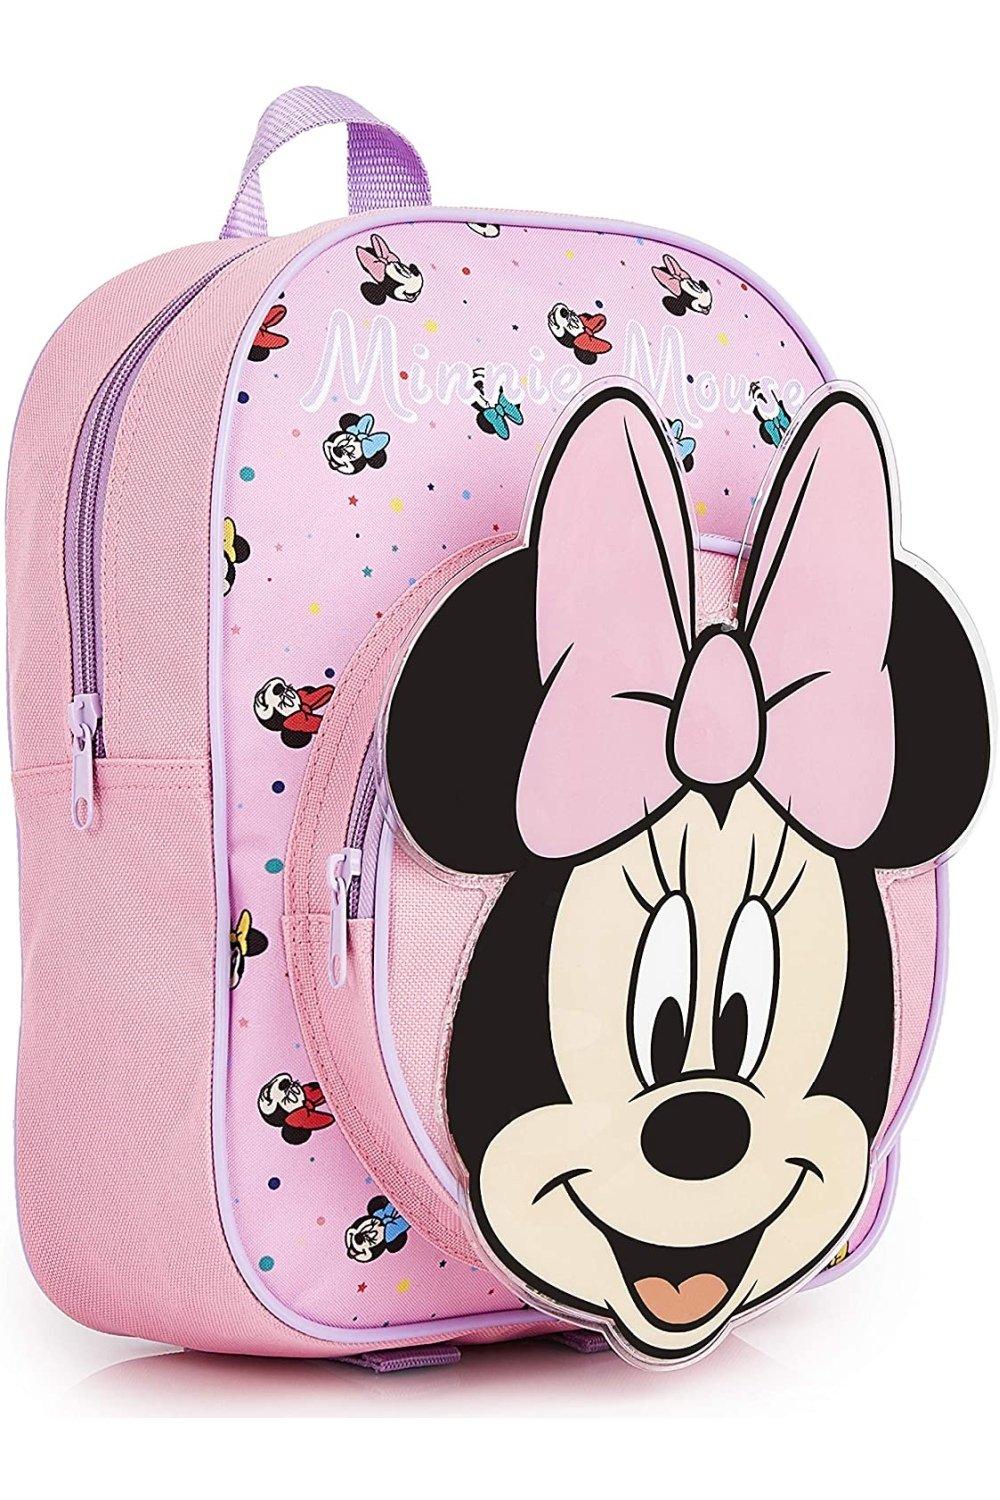 Школьная сумка Минни Маус Disney, розовый набор игровой ракетки воланчик и мячик минни маус disney